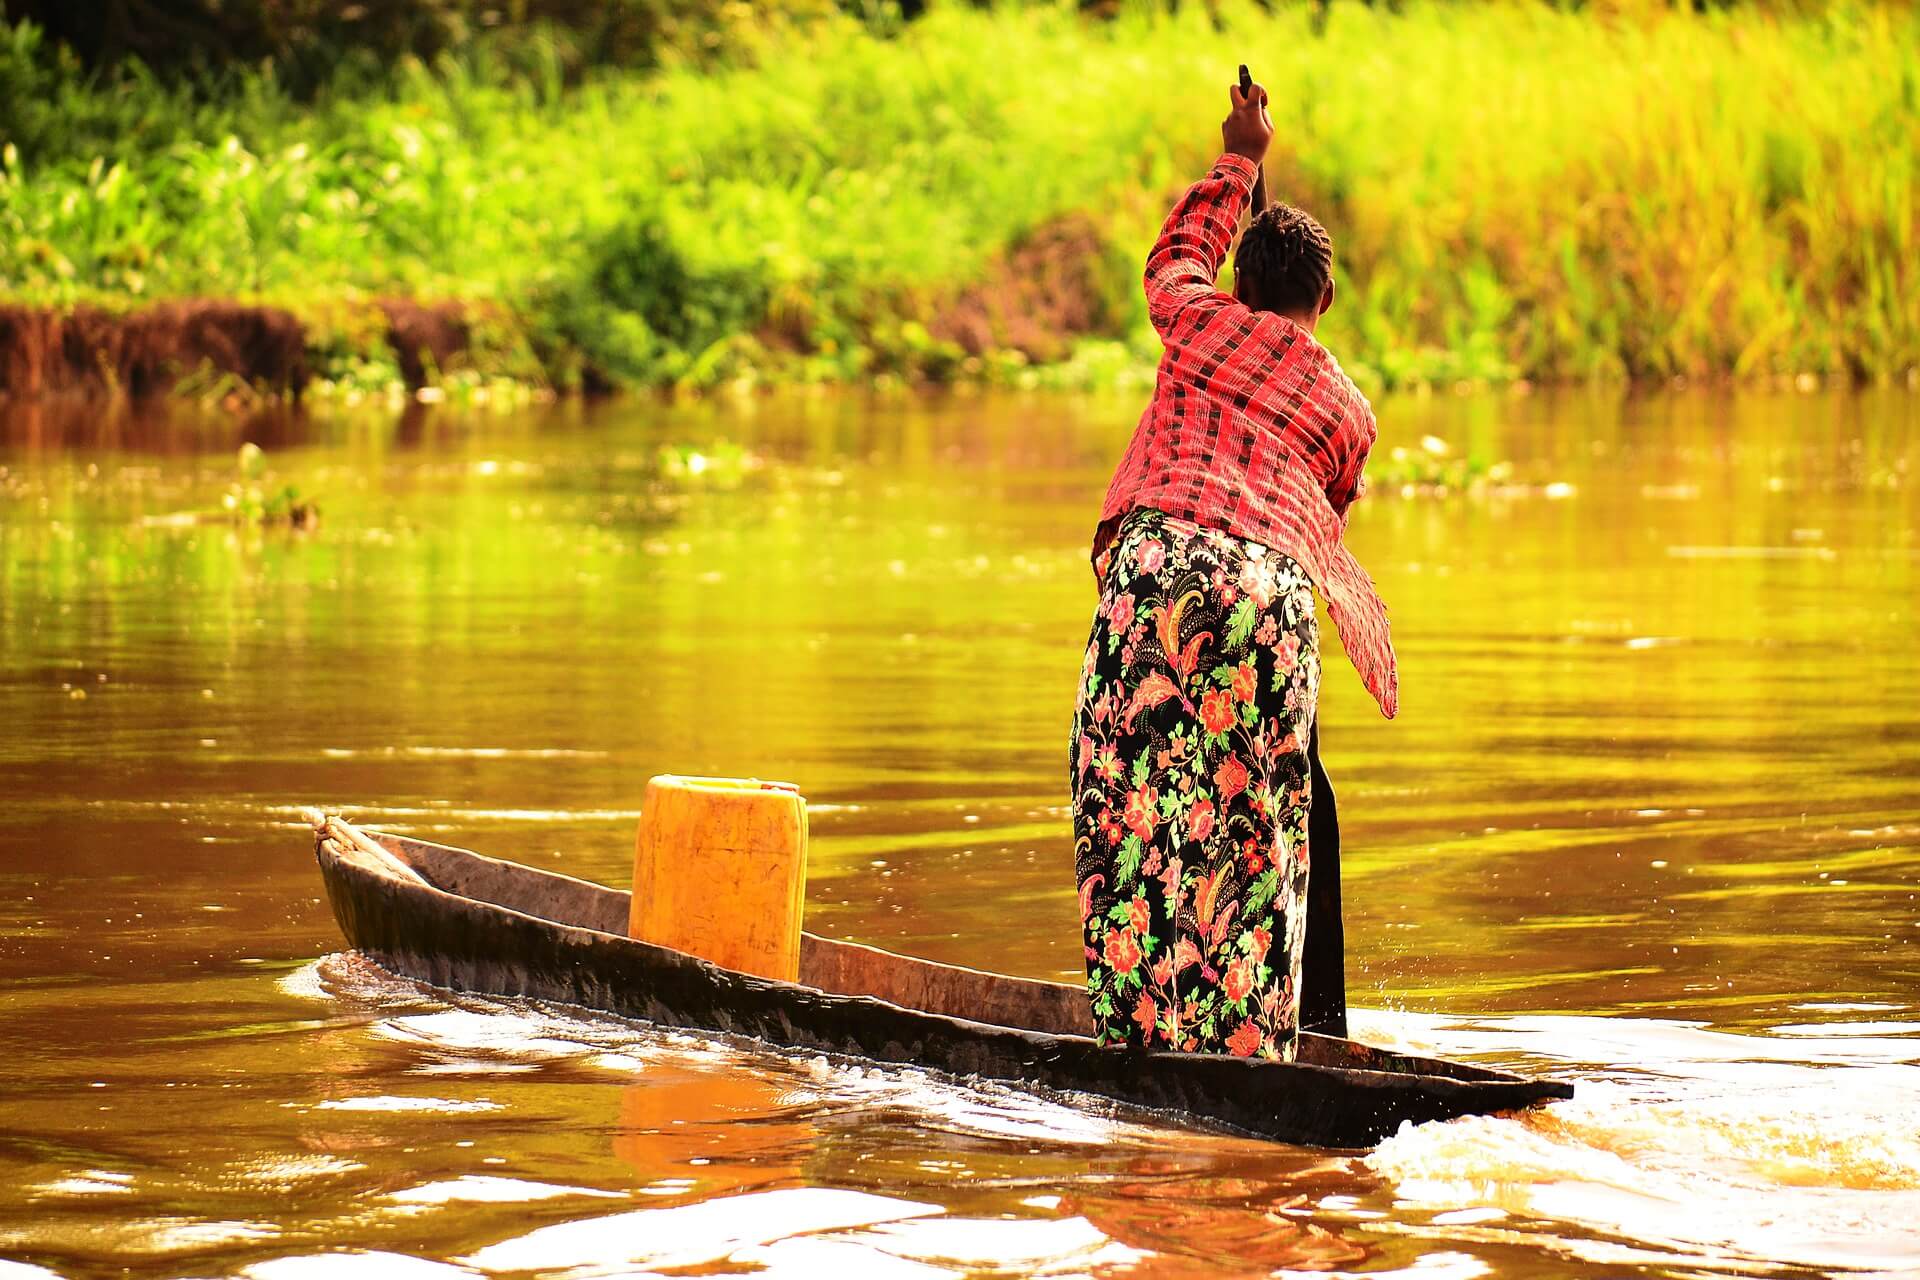 Magendane-Congolese vrouw steekt een rivier over in 2014. Pixabay